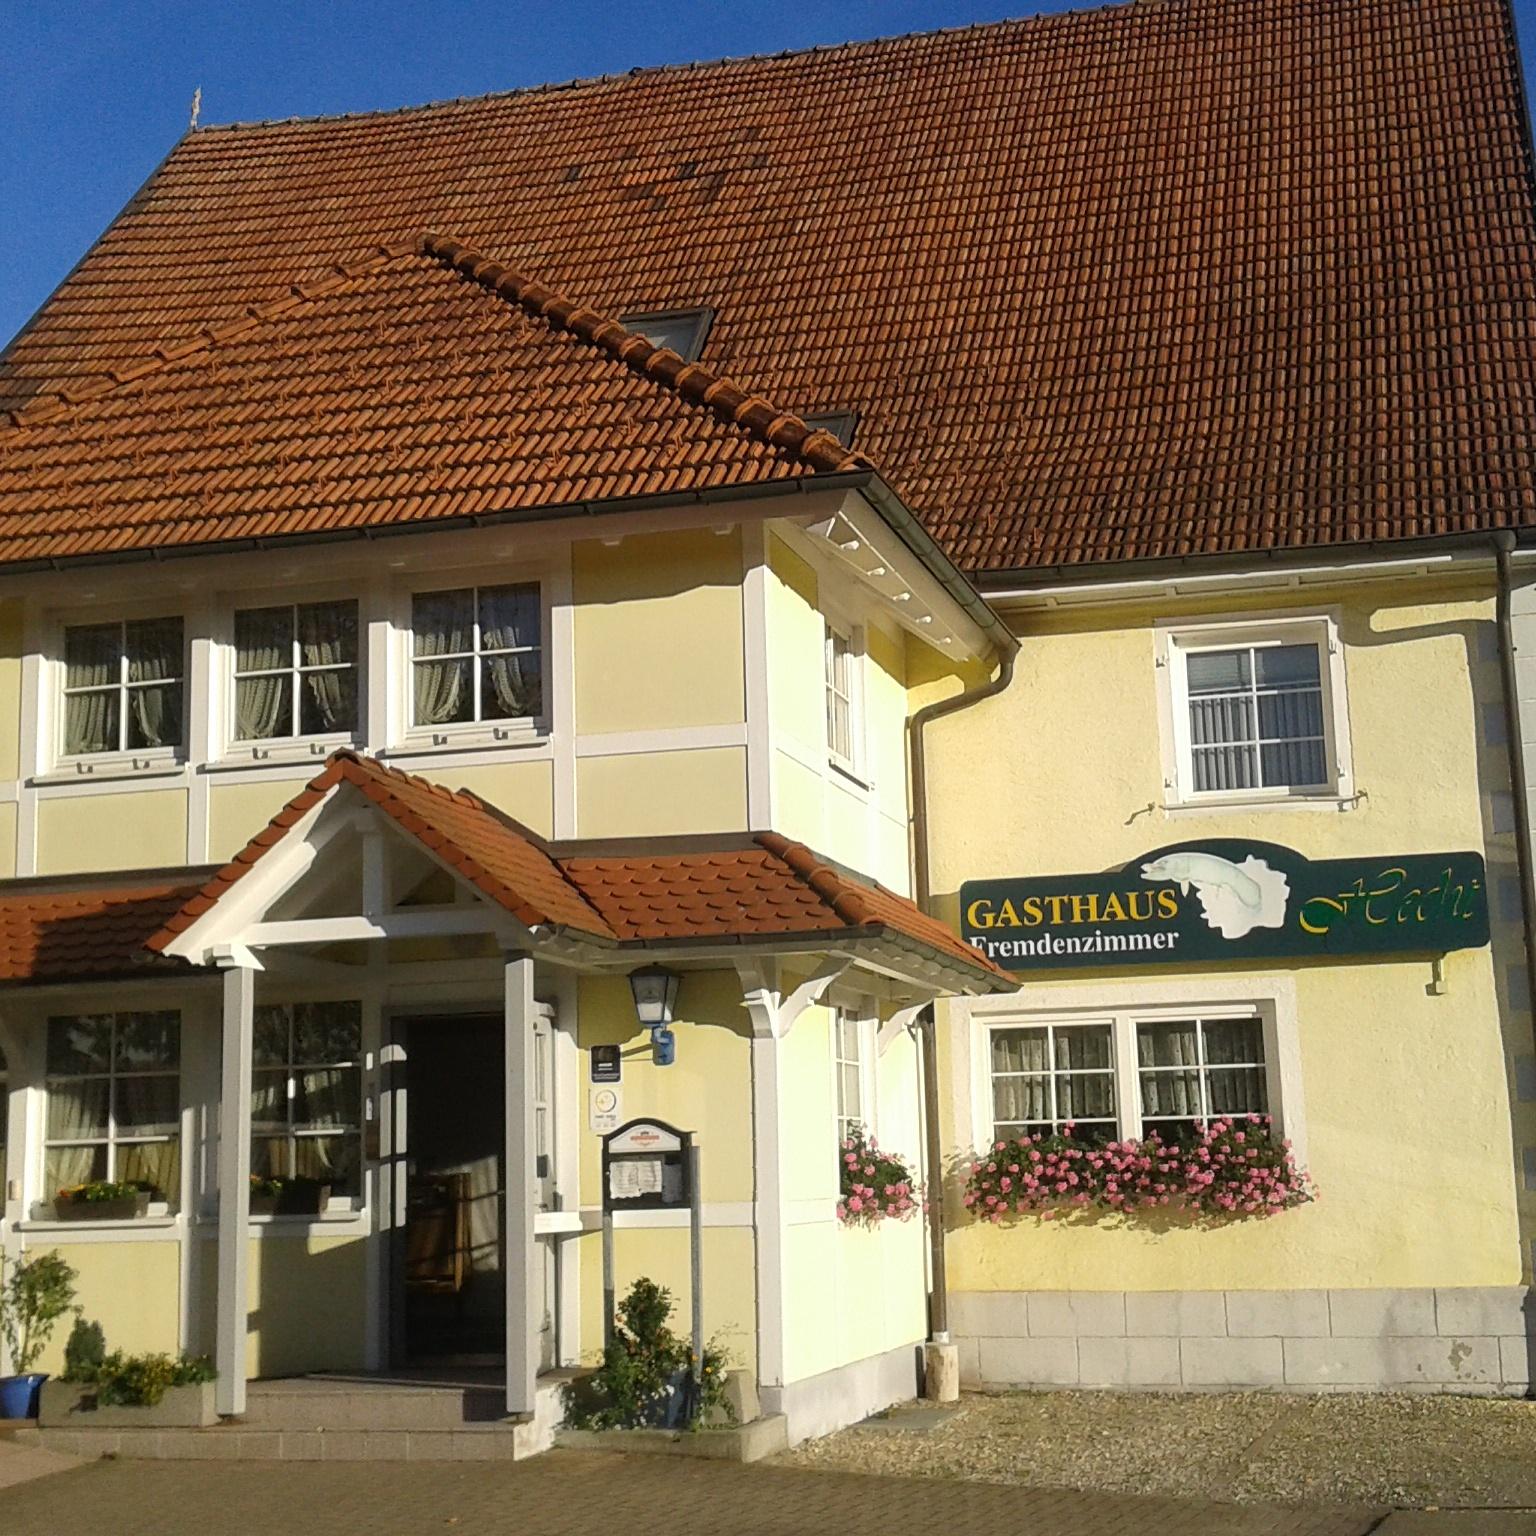 Restaurant "Gasthof Hecht" in Orsingen-Nenzingen